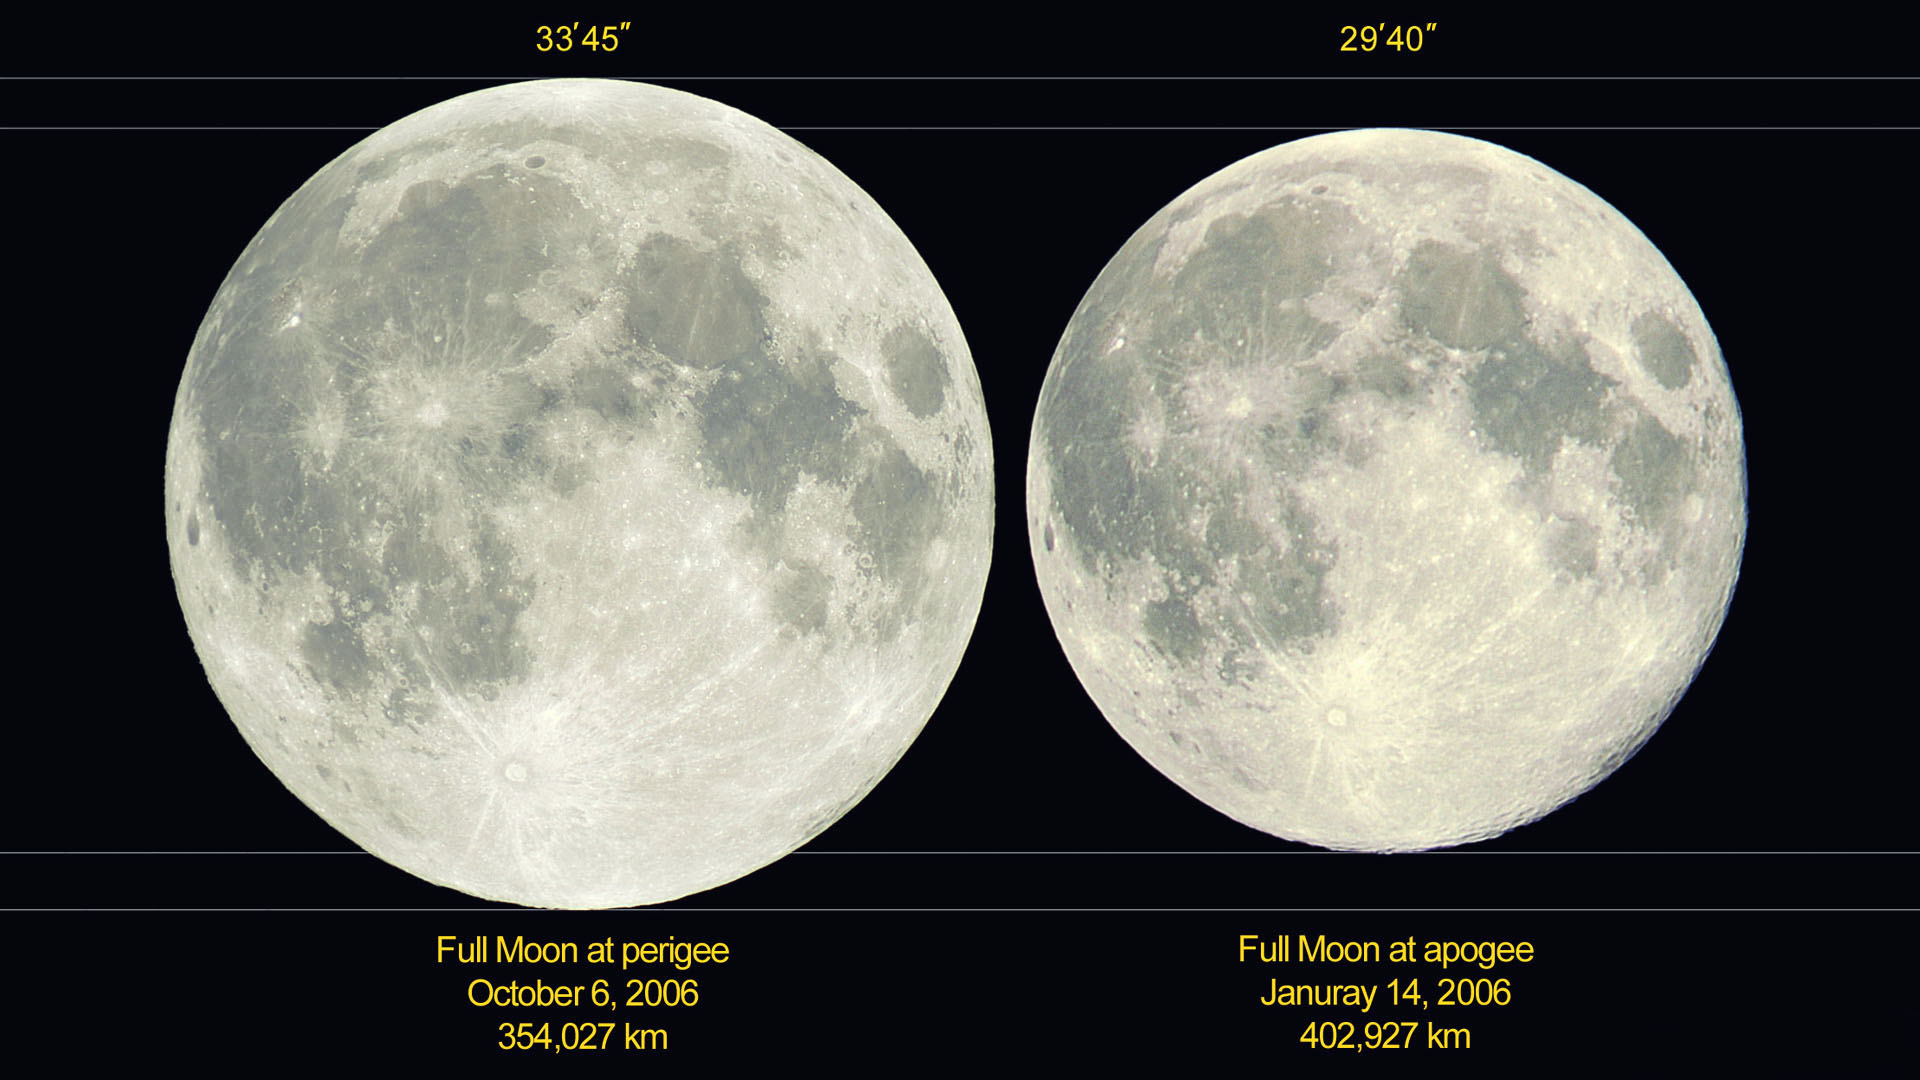 En 2006, la plus petite Pleine Lune Ã©tait celle du 14 janvier 2006. Elle ne mesurait que 29'40", car elle Ã©tait Ã  402 927 km de la Terre, prÃ¨s de l'apogÃ©e (le point d'une orbite le plus Ã©loignÃ© de la Terre). Au contraire, la Pleine Lune de cette nuit, le 7 octobre 2006 Ã©tait la plus grosse de 2006. Elle mesurait 33'45", car elle Ã©tait situÃ©e Ã  un petit 354 027 km de la Terre, prÃ¨s du pÃ©rigÃ©e (le point d'une orbite le plus proche de la Terre). Nous avons toujours l'impression que la Lune fait le mÃªme diamÃ¨tre, sauf quand elle est proche de l'horizon, mais c'est un effet d'optique, alors qu'en rÃ©alitÃ© son diamÃ¨tre apparent varie de prÃ¨s de 14 %, soit une variation de sa surface apparente de 30 % !